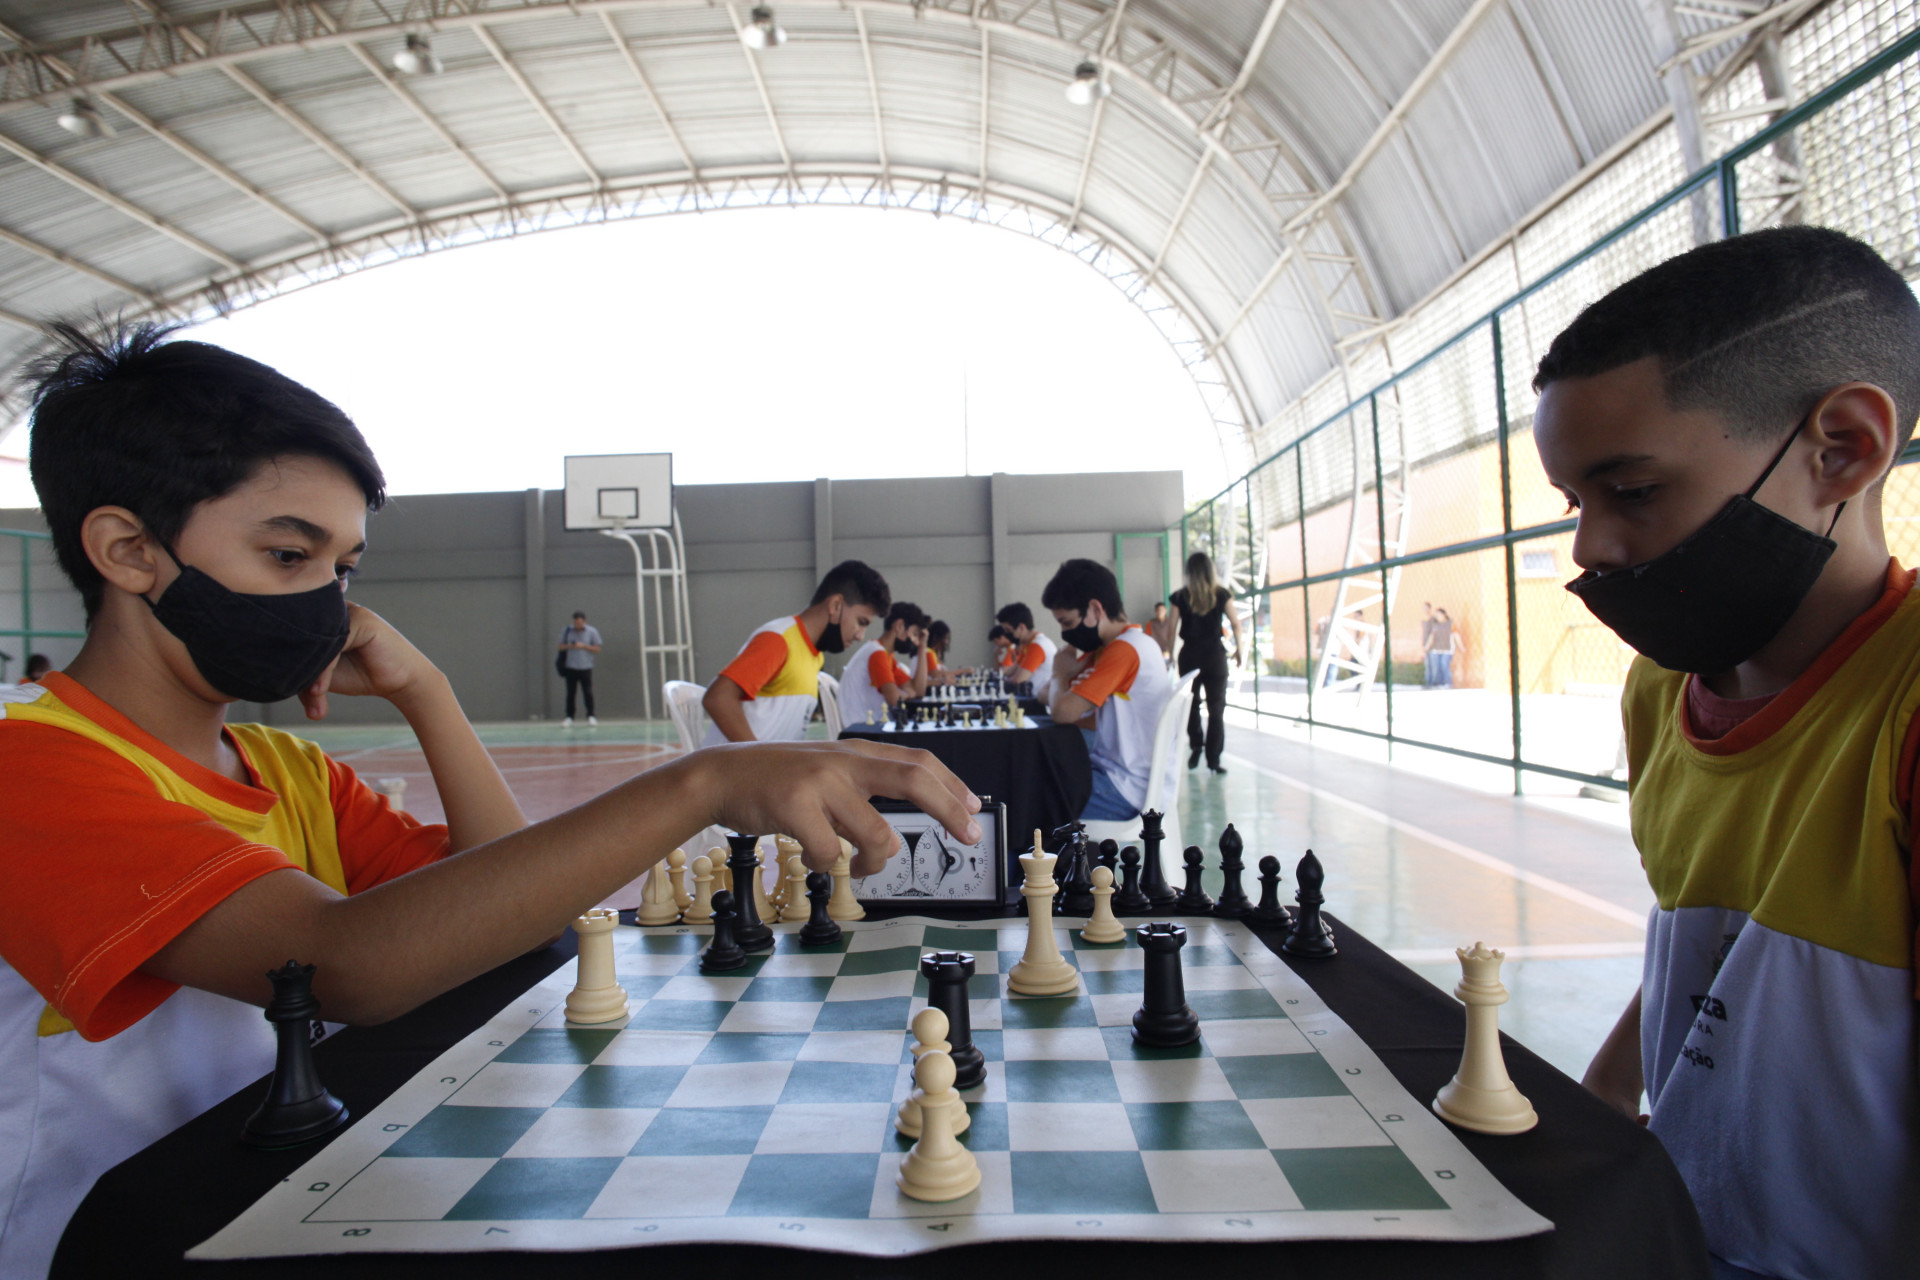 Alunos de rede municipal conquistam em campeonato de xadrez • PortalR3 •  Criando Opiniões